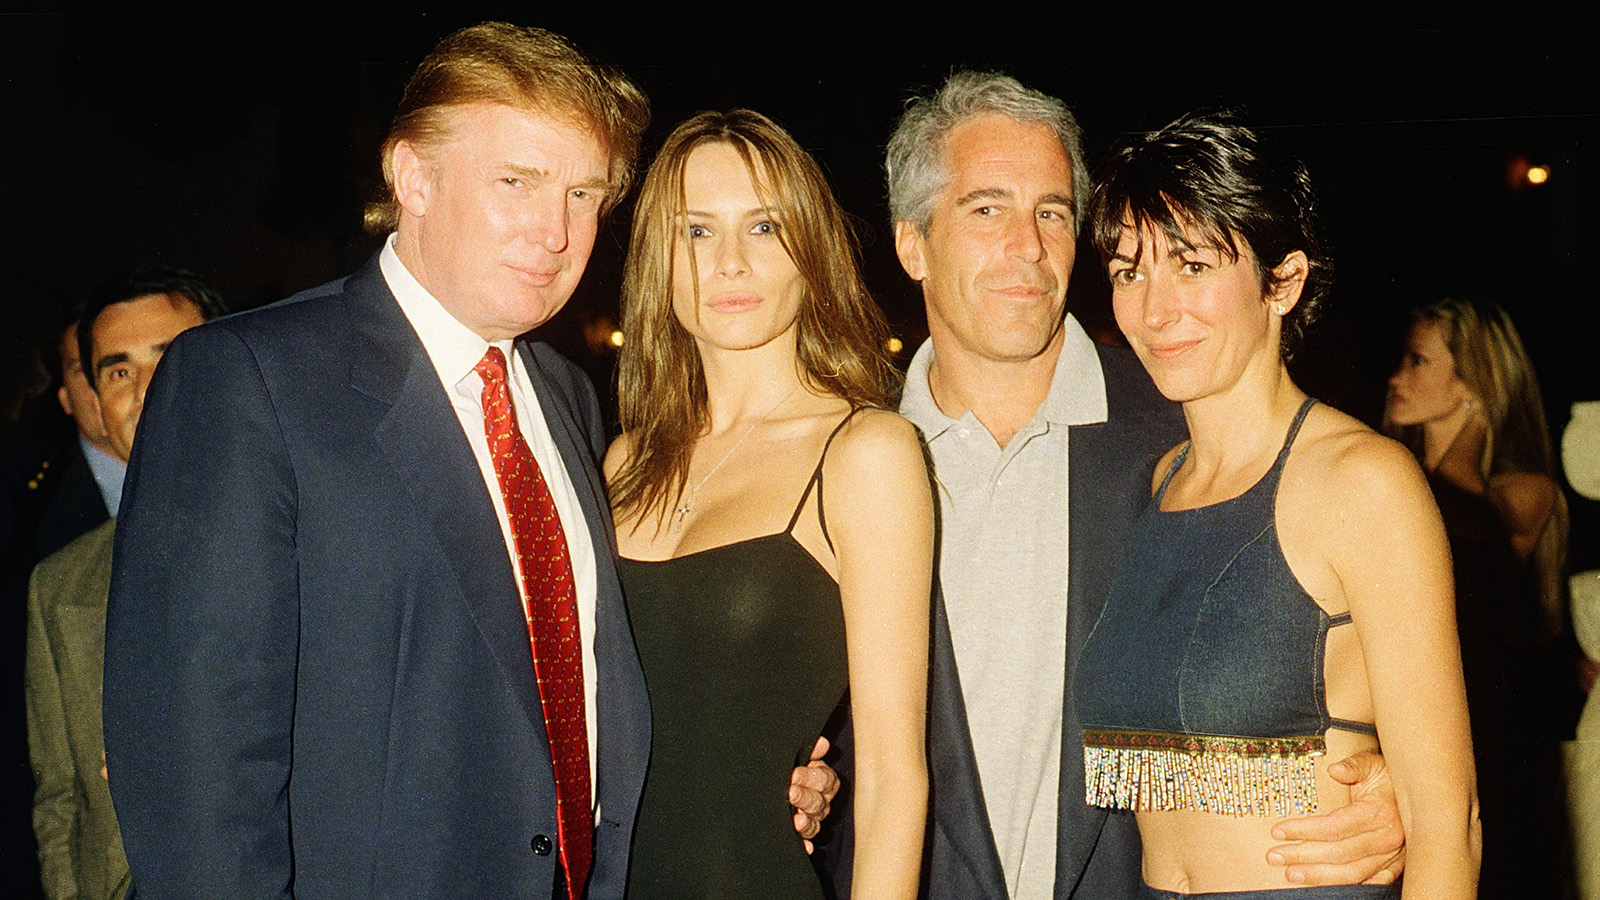 <p>На фото: будущий президент США Дональд Трамп и его подруга (и будущая жена), бывшая модель Мелания Кнаусс, финансист (и будущий осужденный за сексуальные преступления) Джеффри Эпштейн и британская светская львица Гислейн Максвелл позируют вместе в ночном клубе, Палм-Бич, Флорида, 12 февраля 2000 года</p>